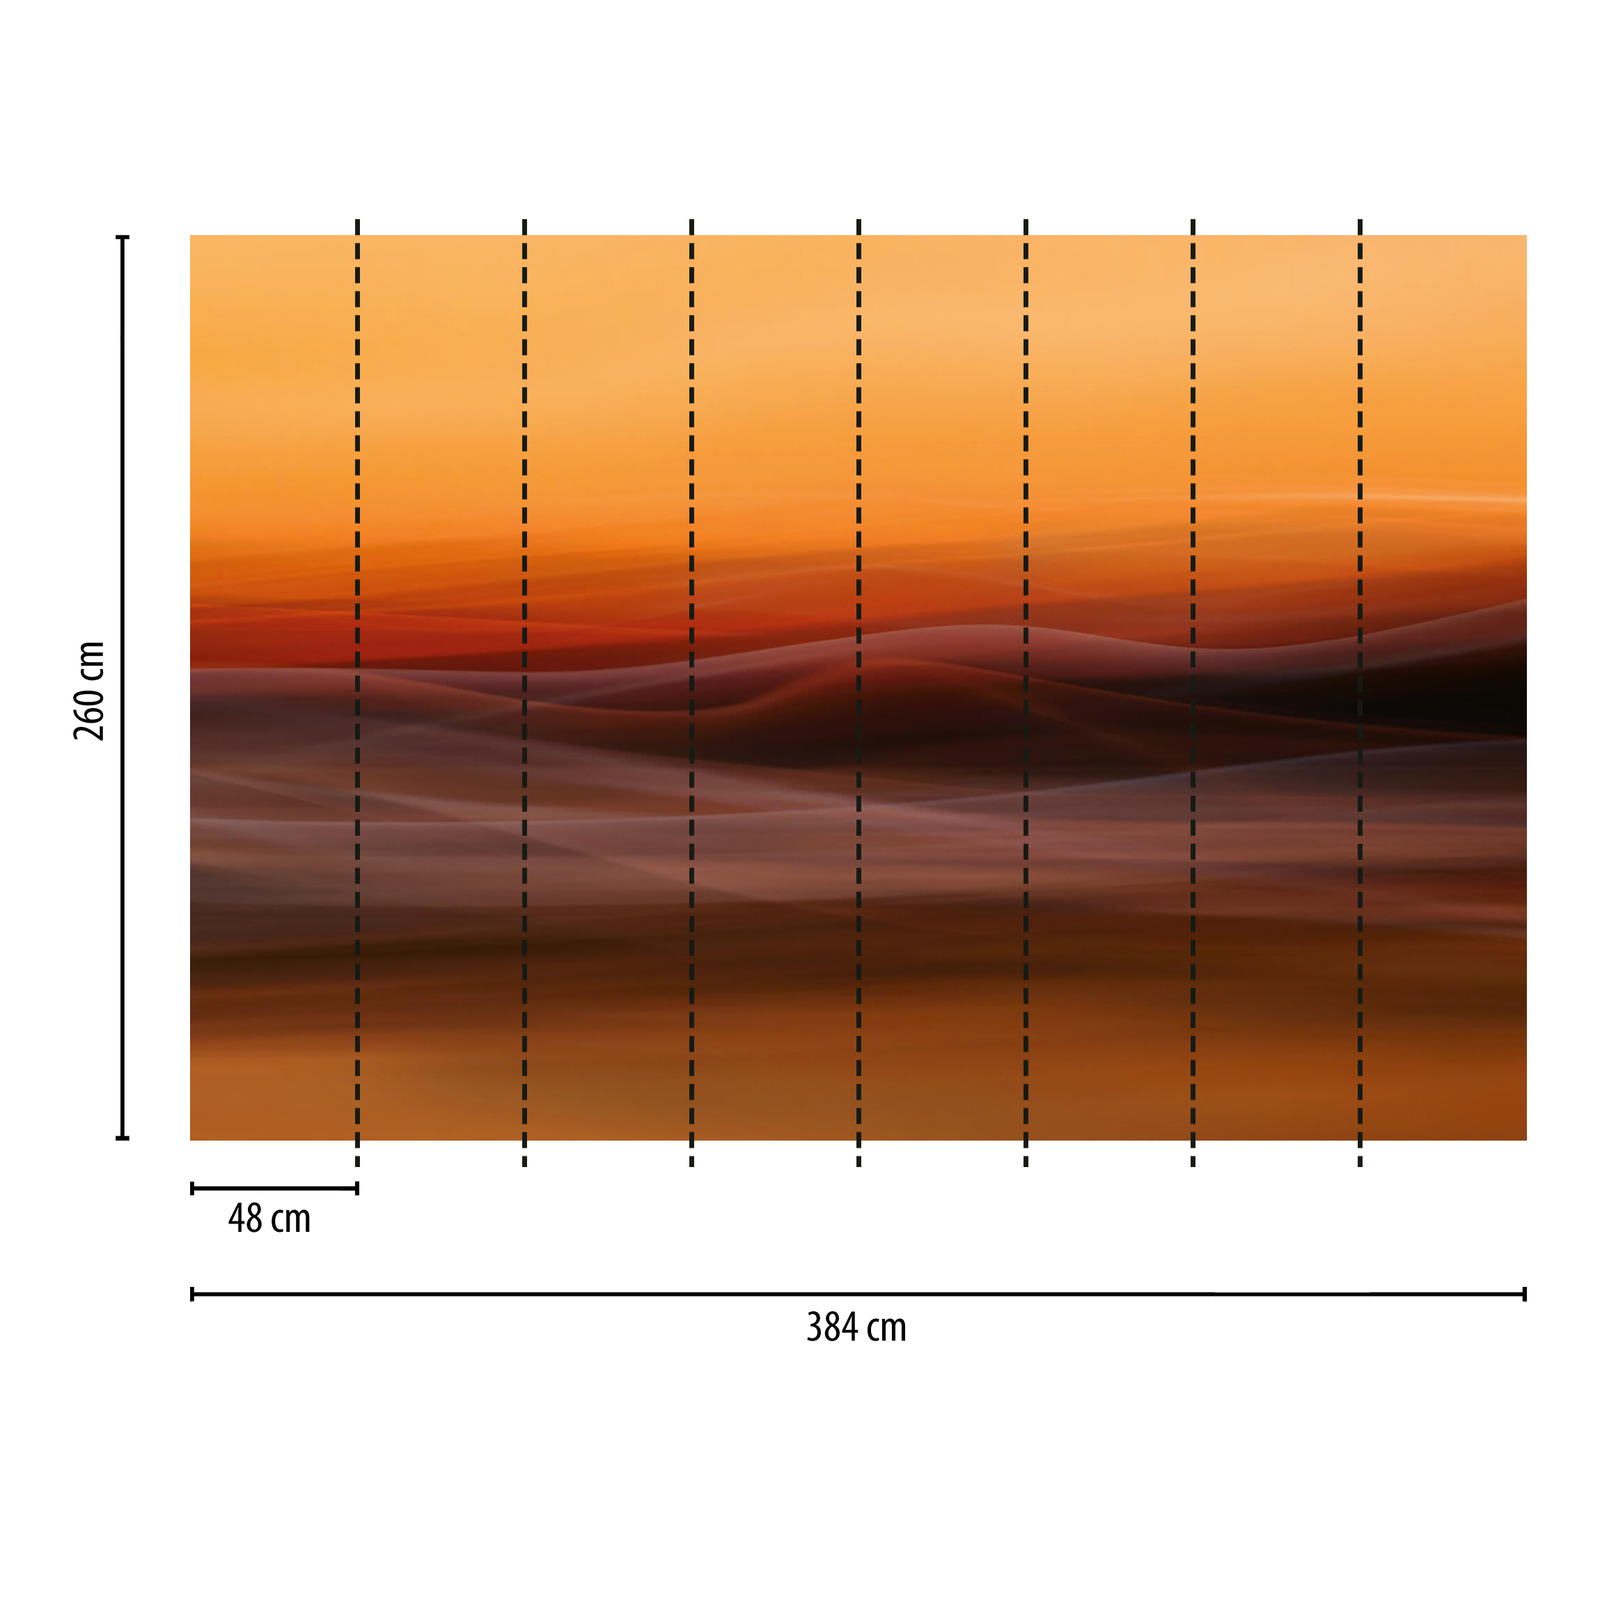             Fototapete abstrakter Nebel – Orange, Gelb, Rot
        